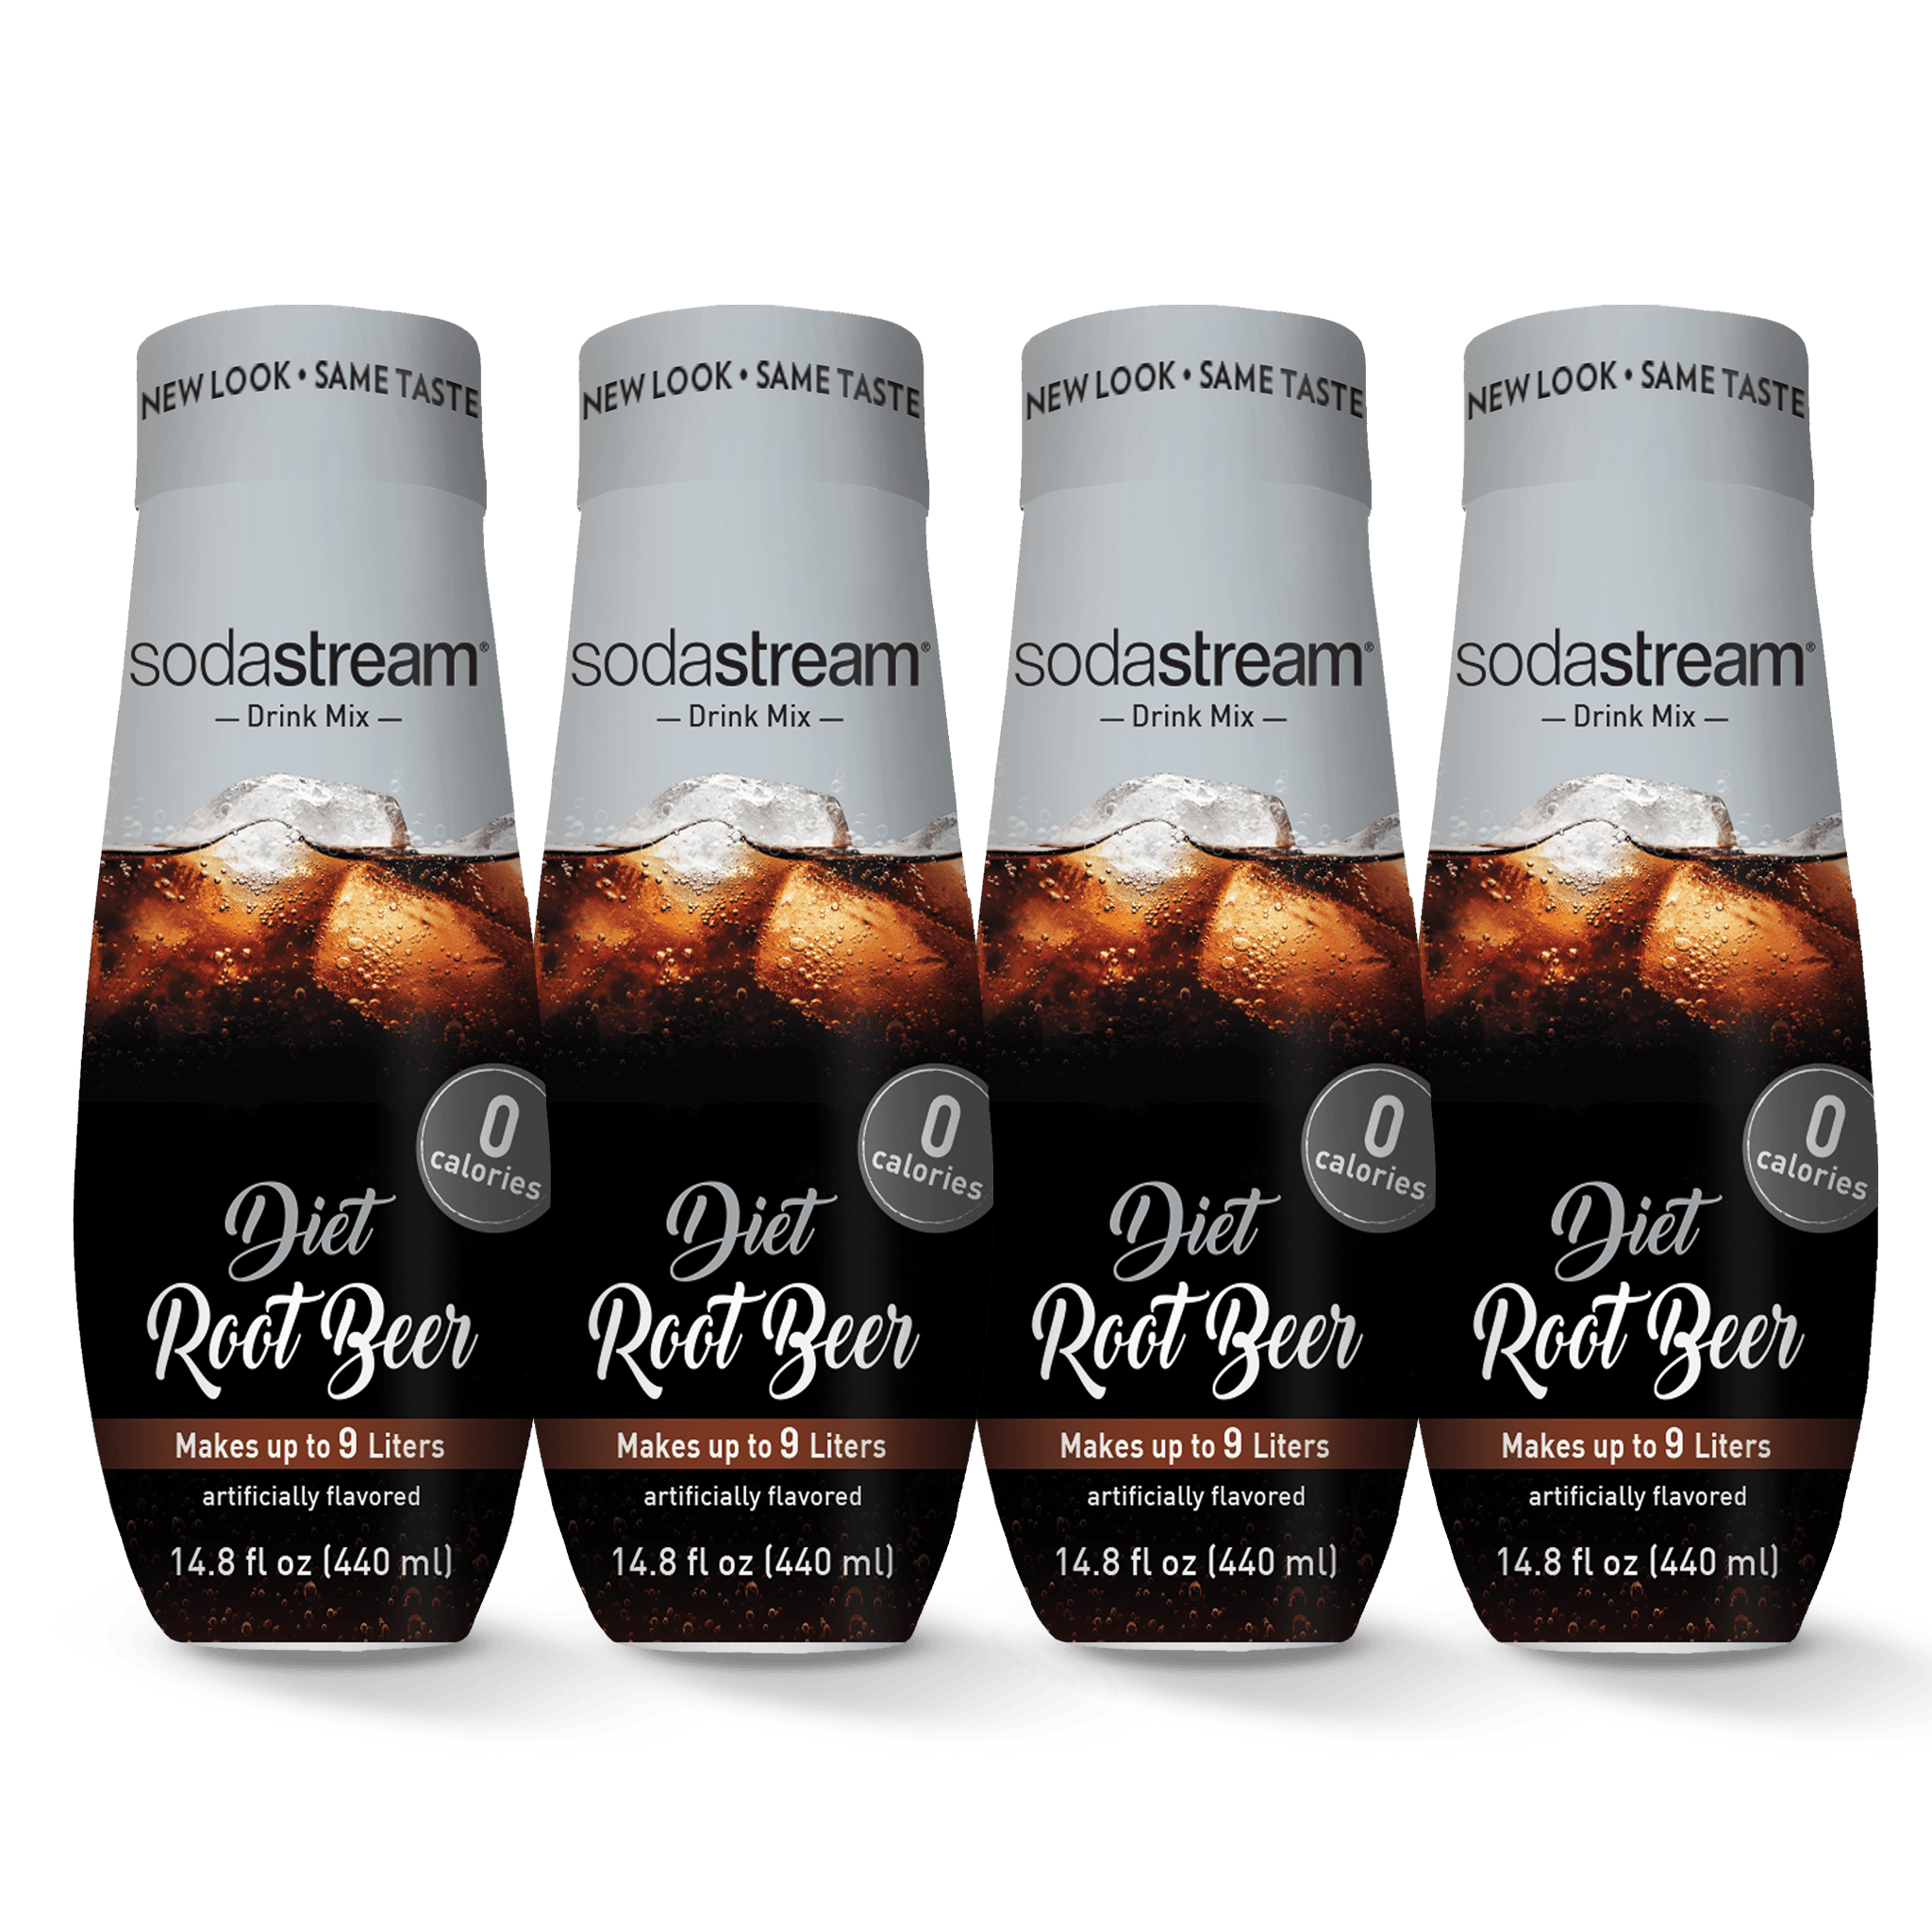 Diet Root Beer 4 Pack sodastream syrup